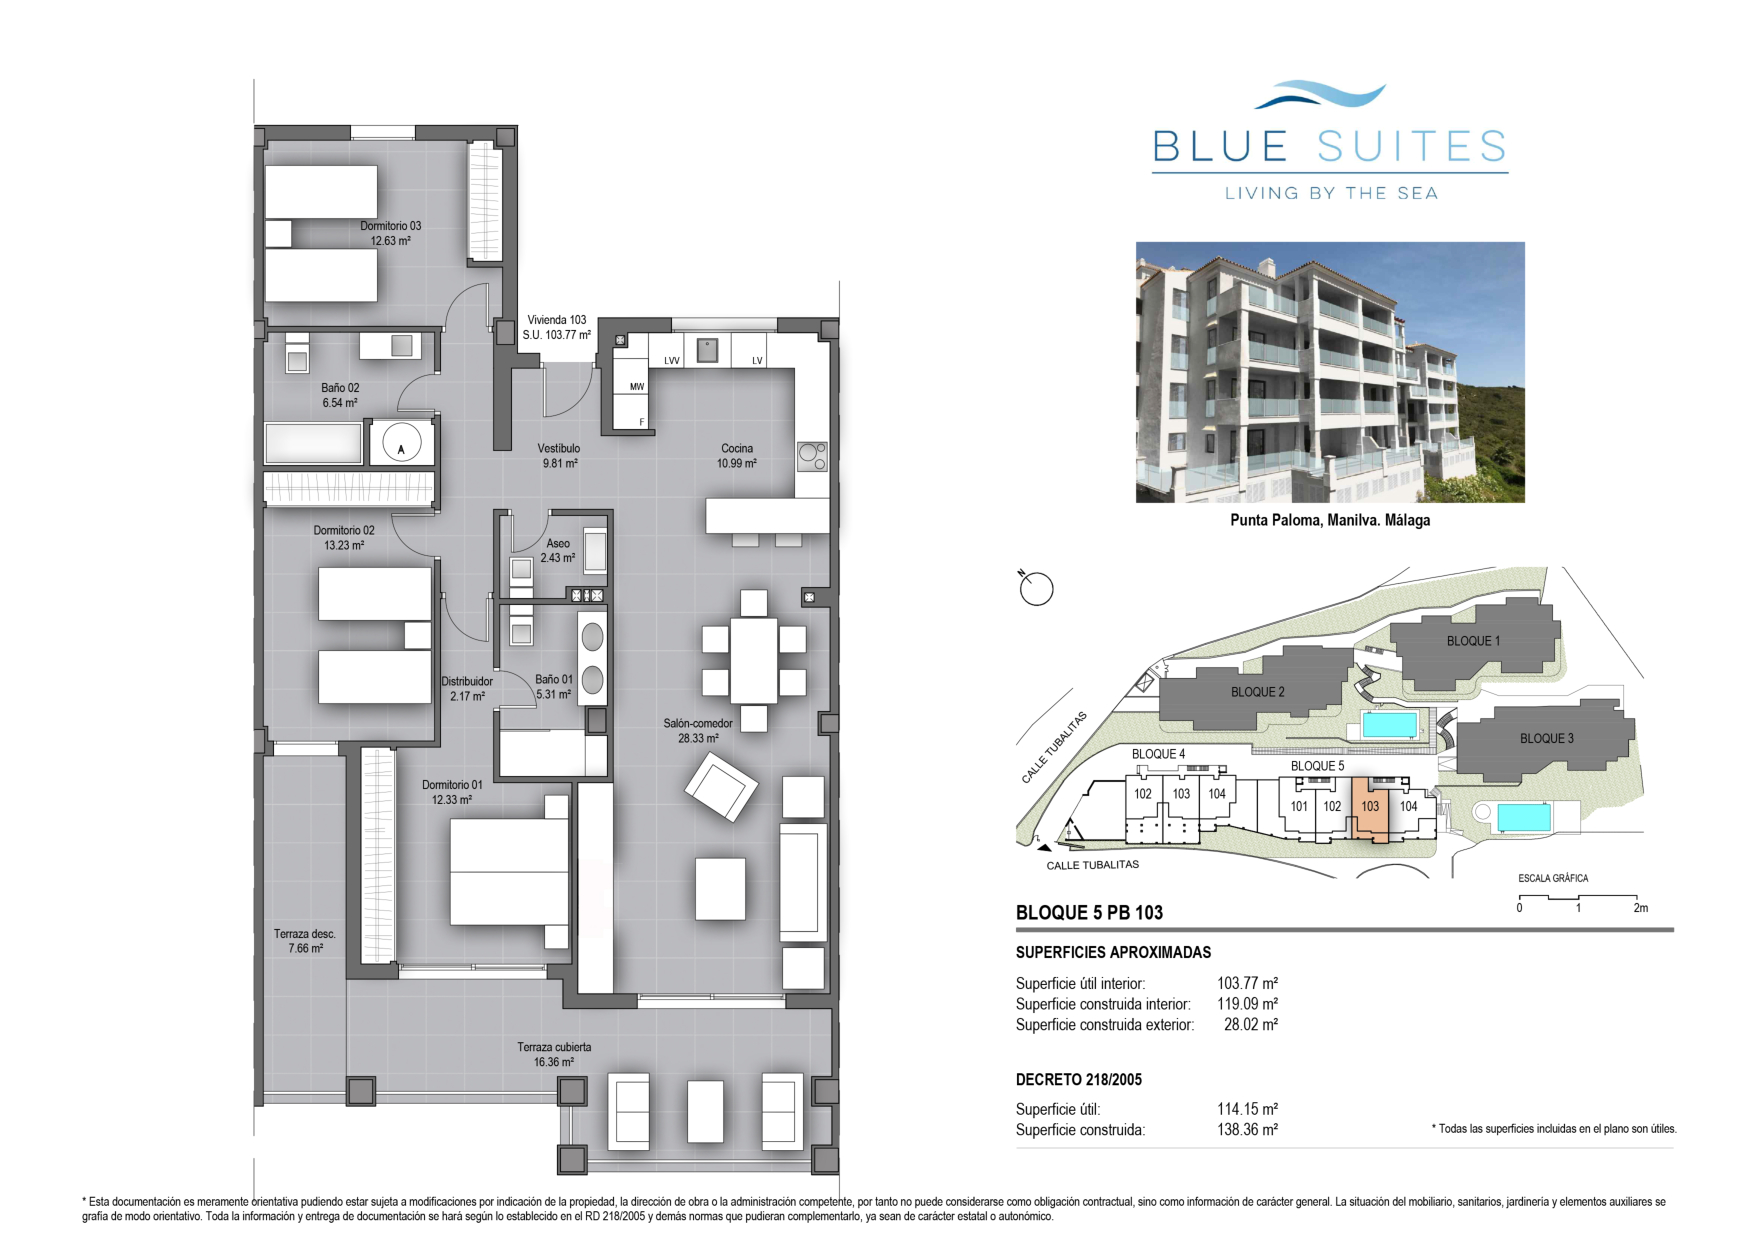 DBS Blue Suites